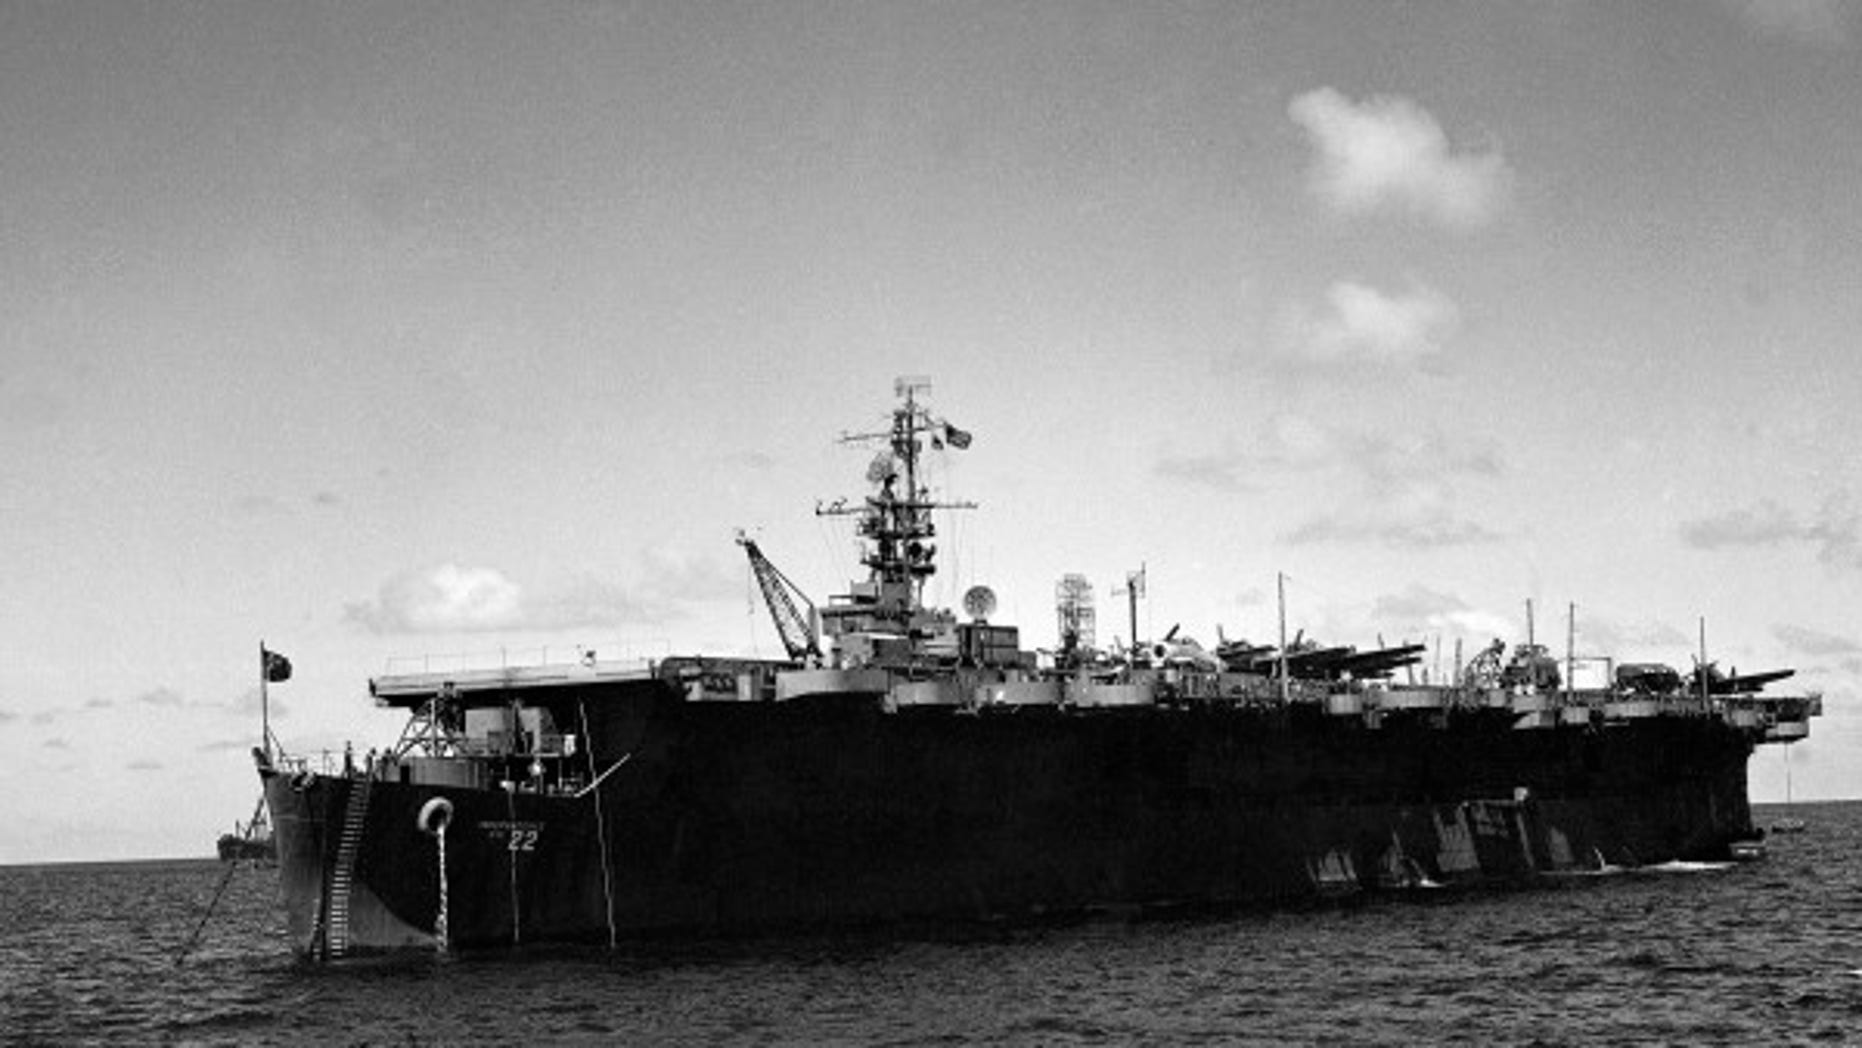 Ex escort carrier Sunk in Vietnam war